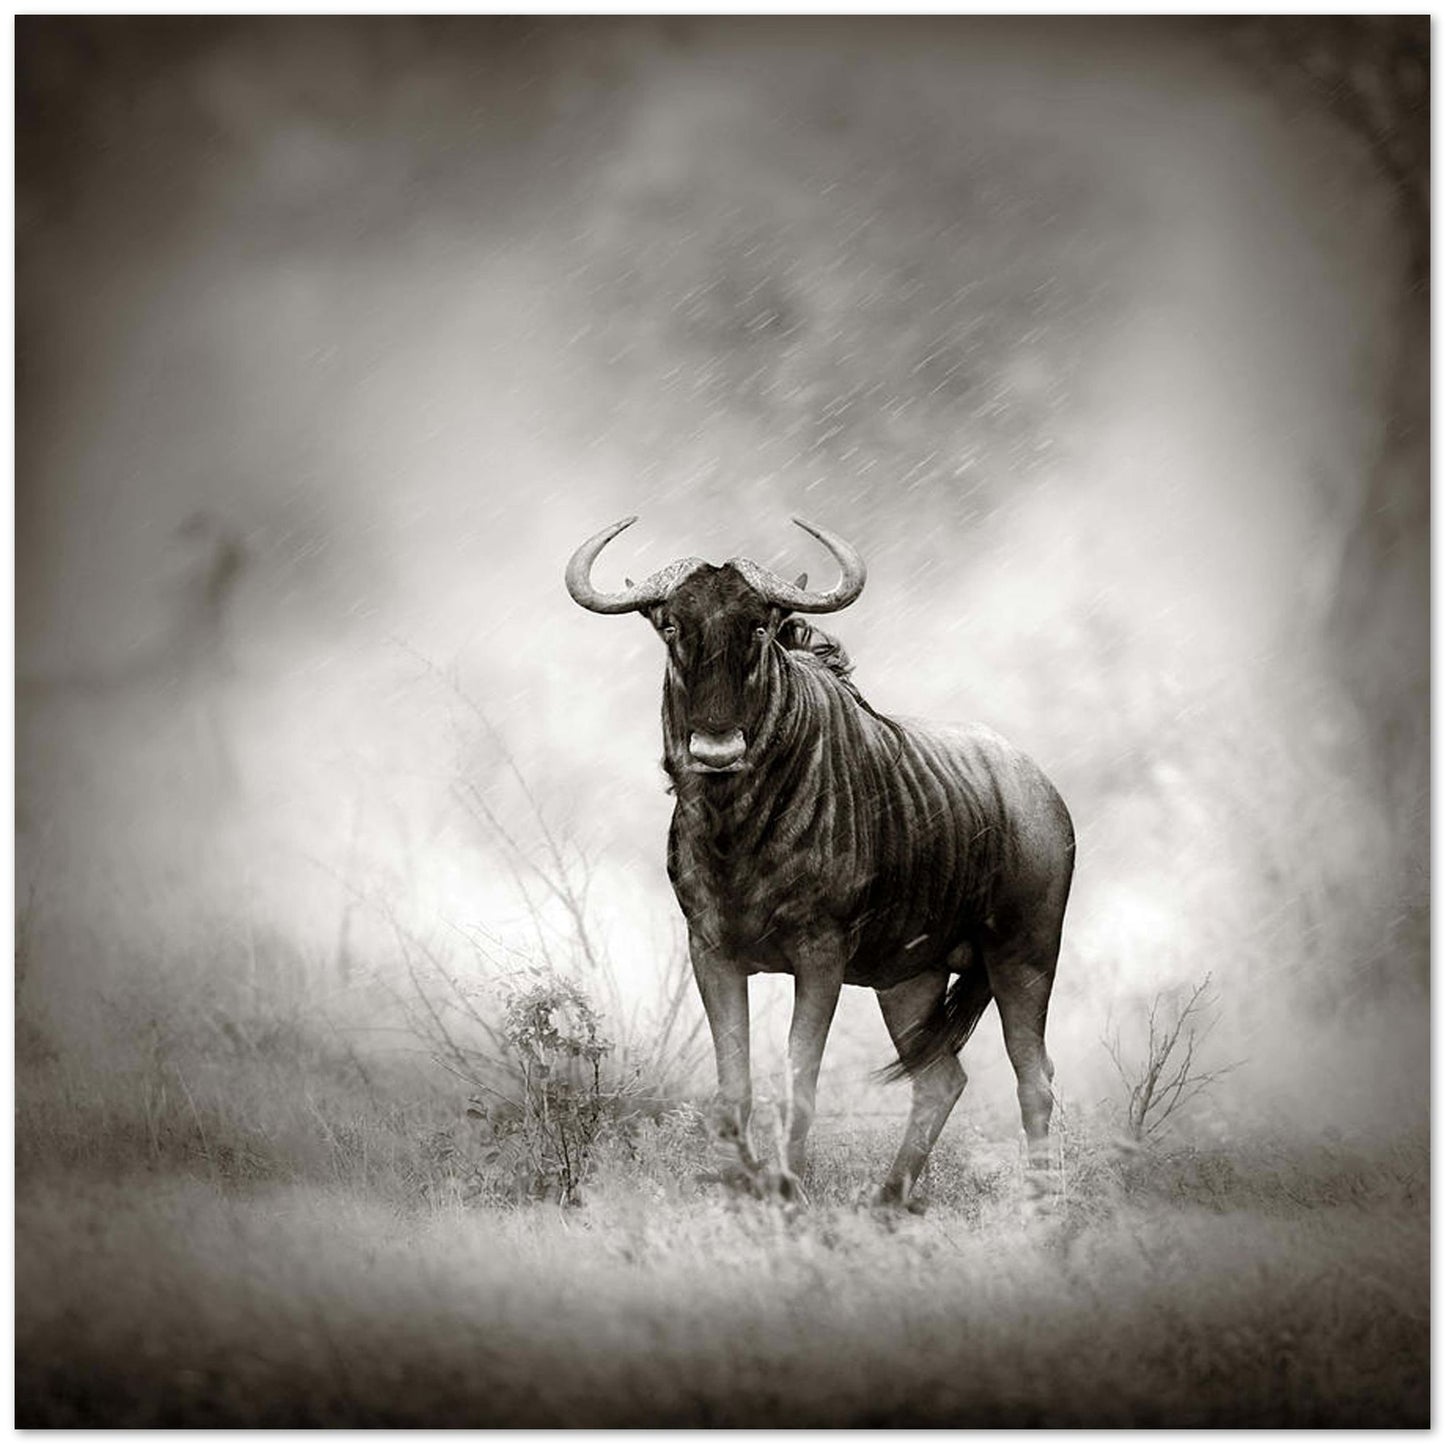 Blue Wildebeest in rainstorm - @chusna